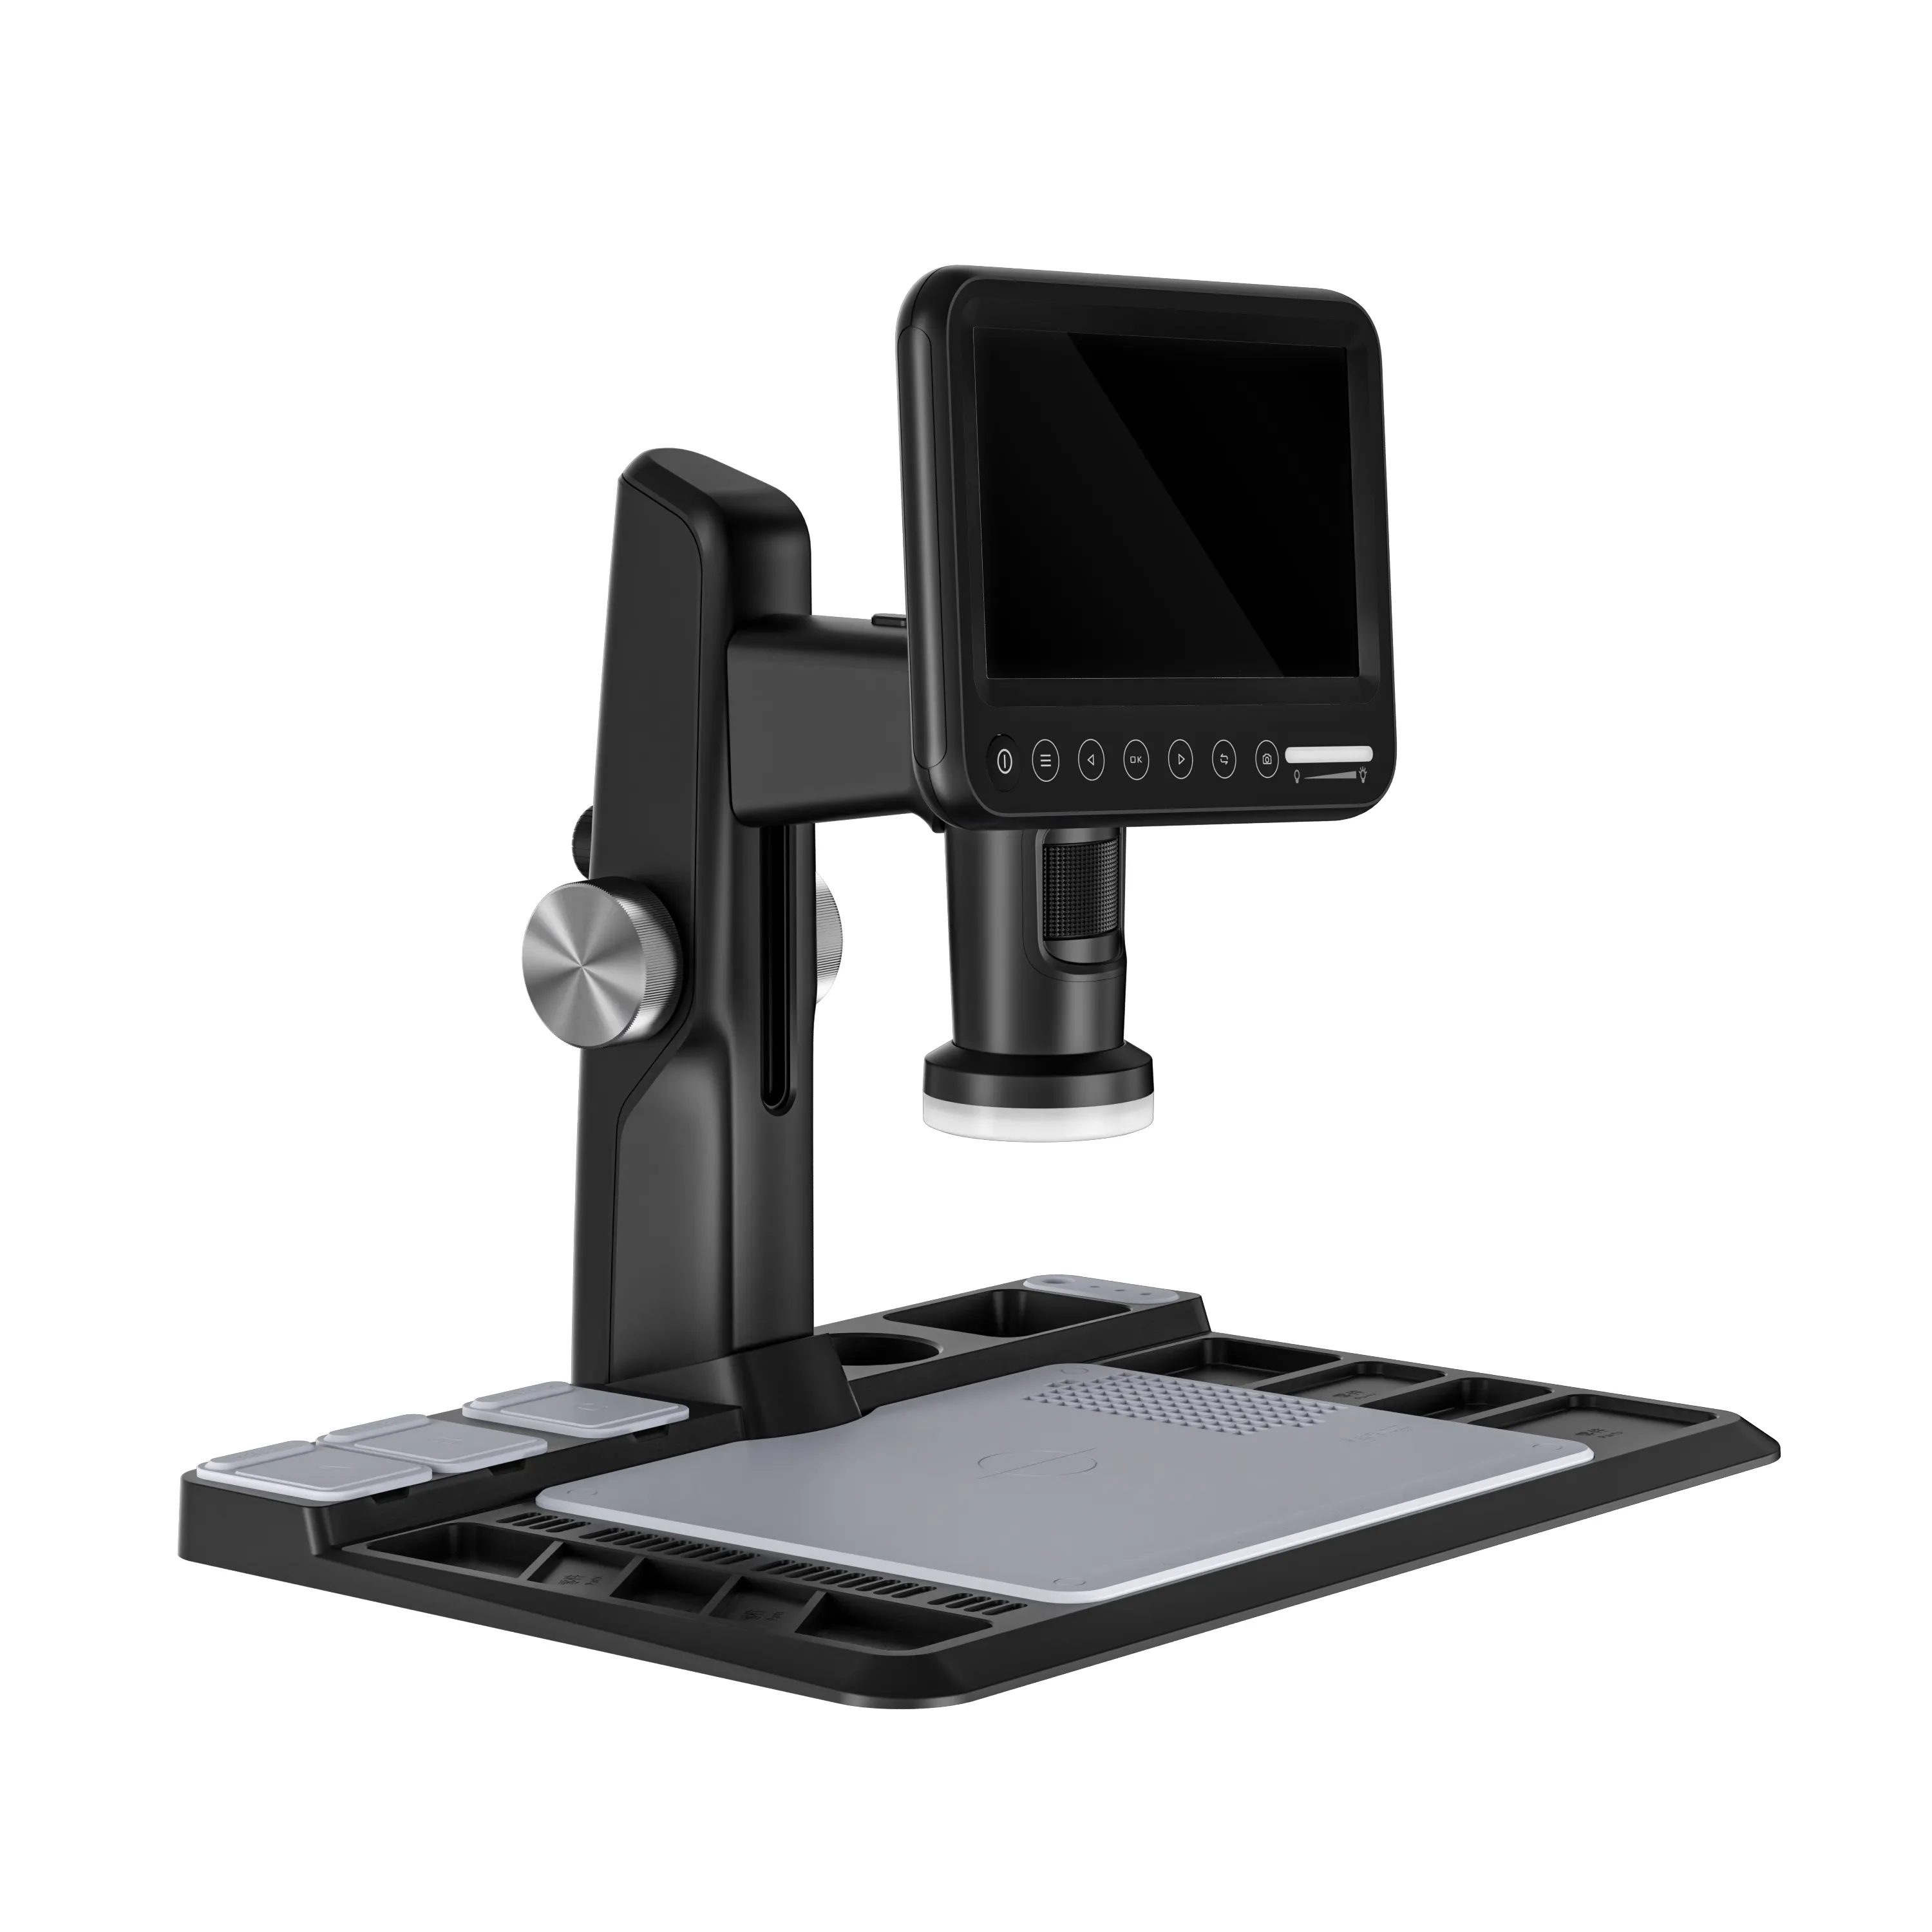 Aleezi 318a 1600x Vergroting 7 Inch Ips Lcd Gevoelige Touch Screen Usb Digitale Microscoop Met Draadloze Afstandsbediening